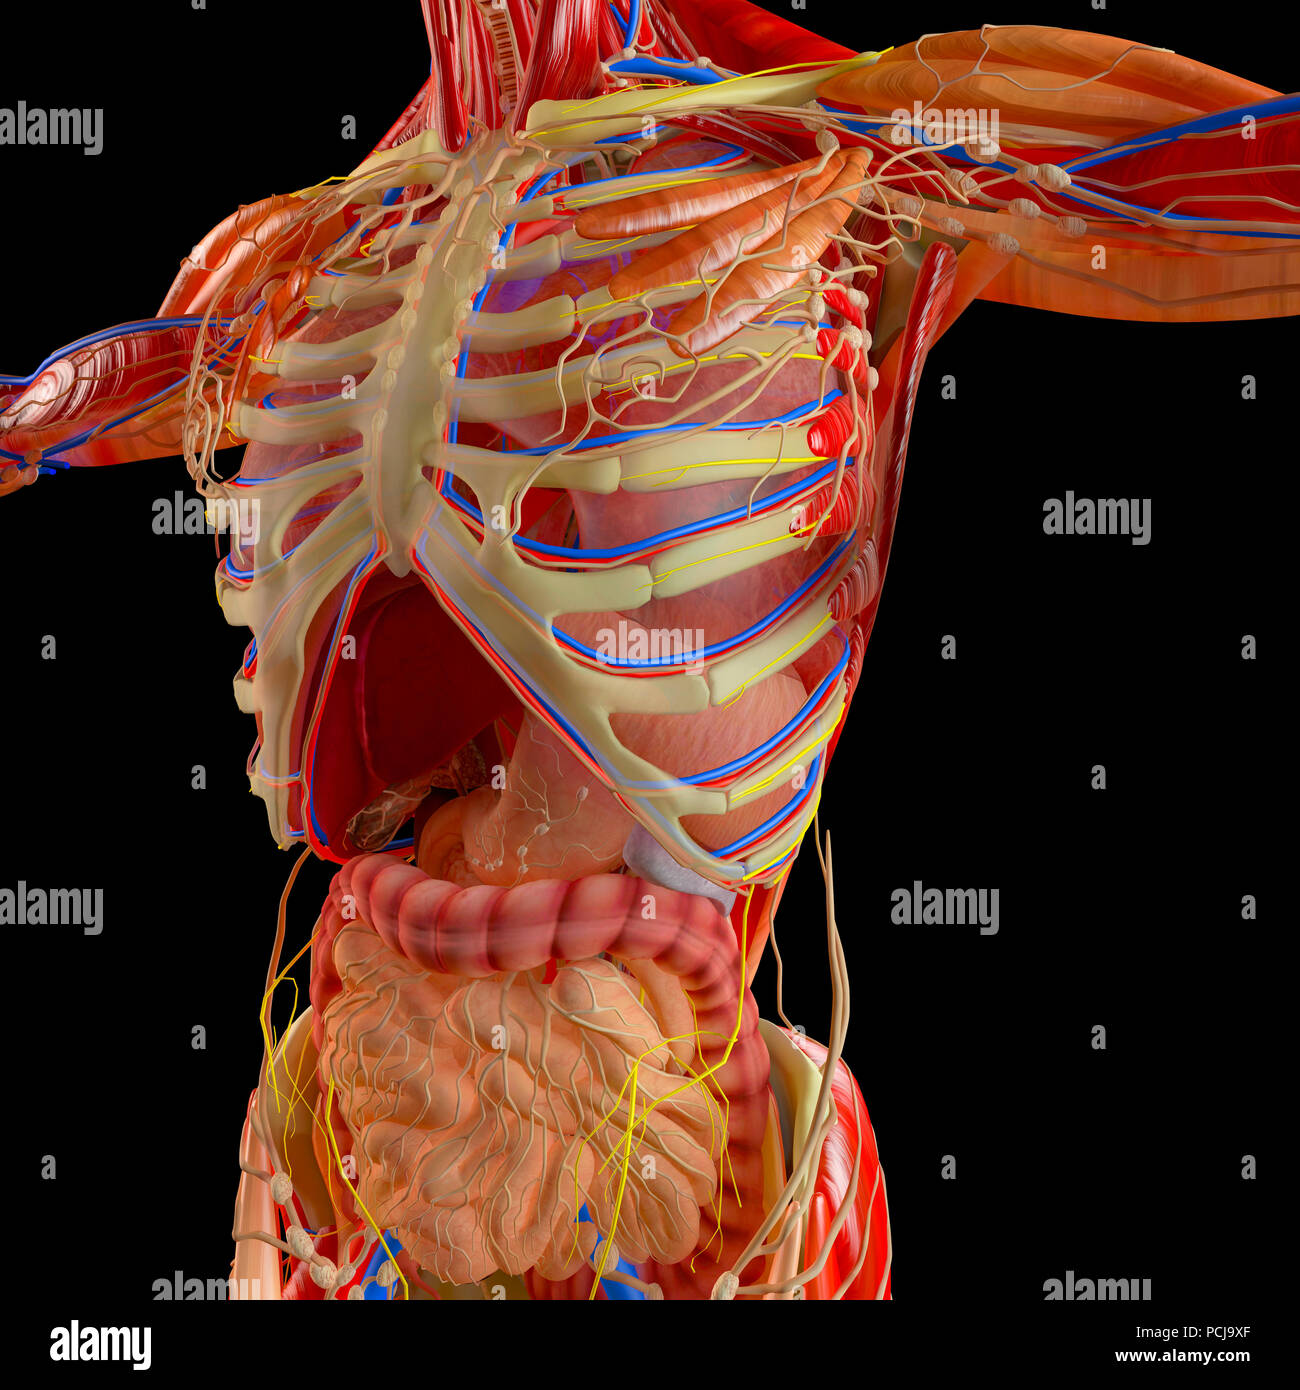 Corps humain, le système musculaire, le système digestif, de l'anatomie.  : Oesophage, Estomac et duodénum, côlon. L'anatomie humaine. Les organes internes Banque D'Images